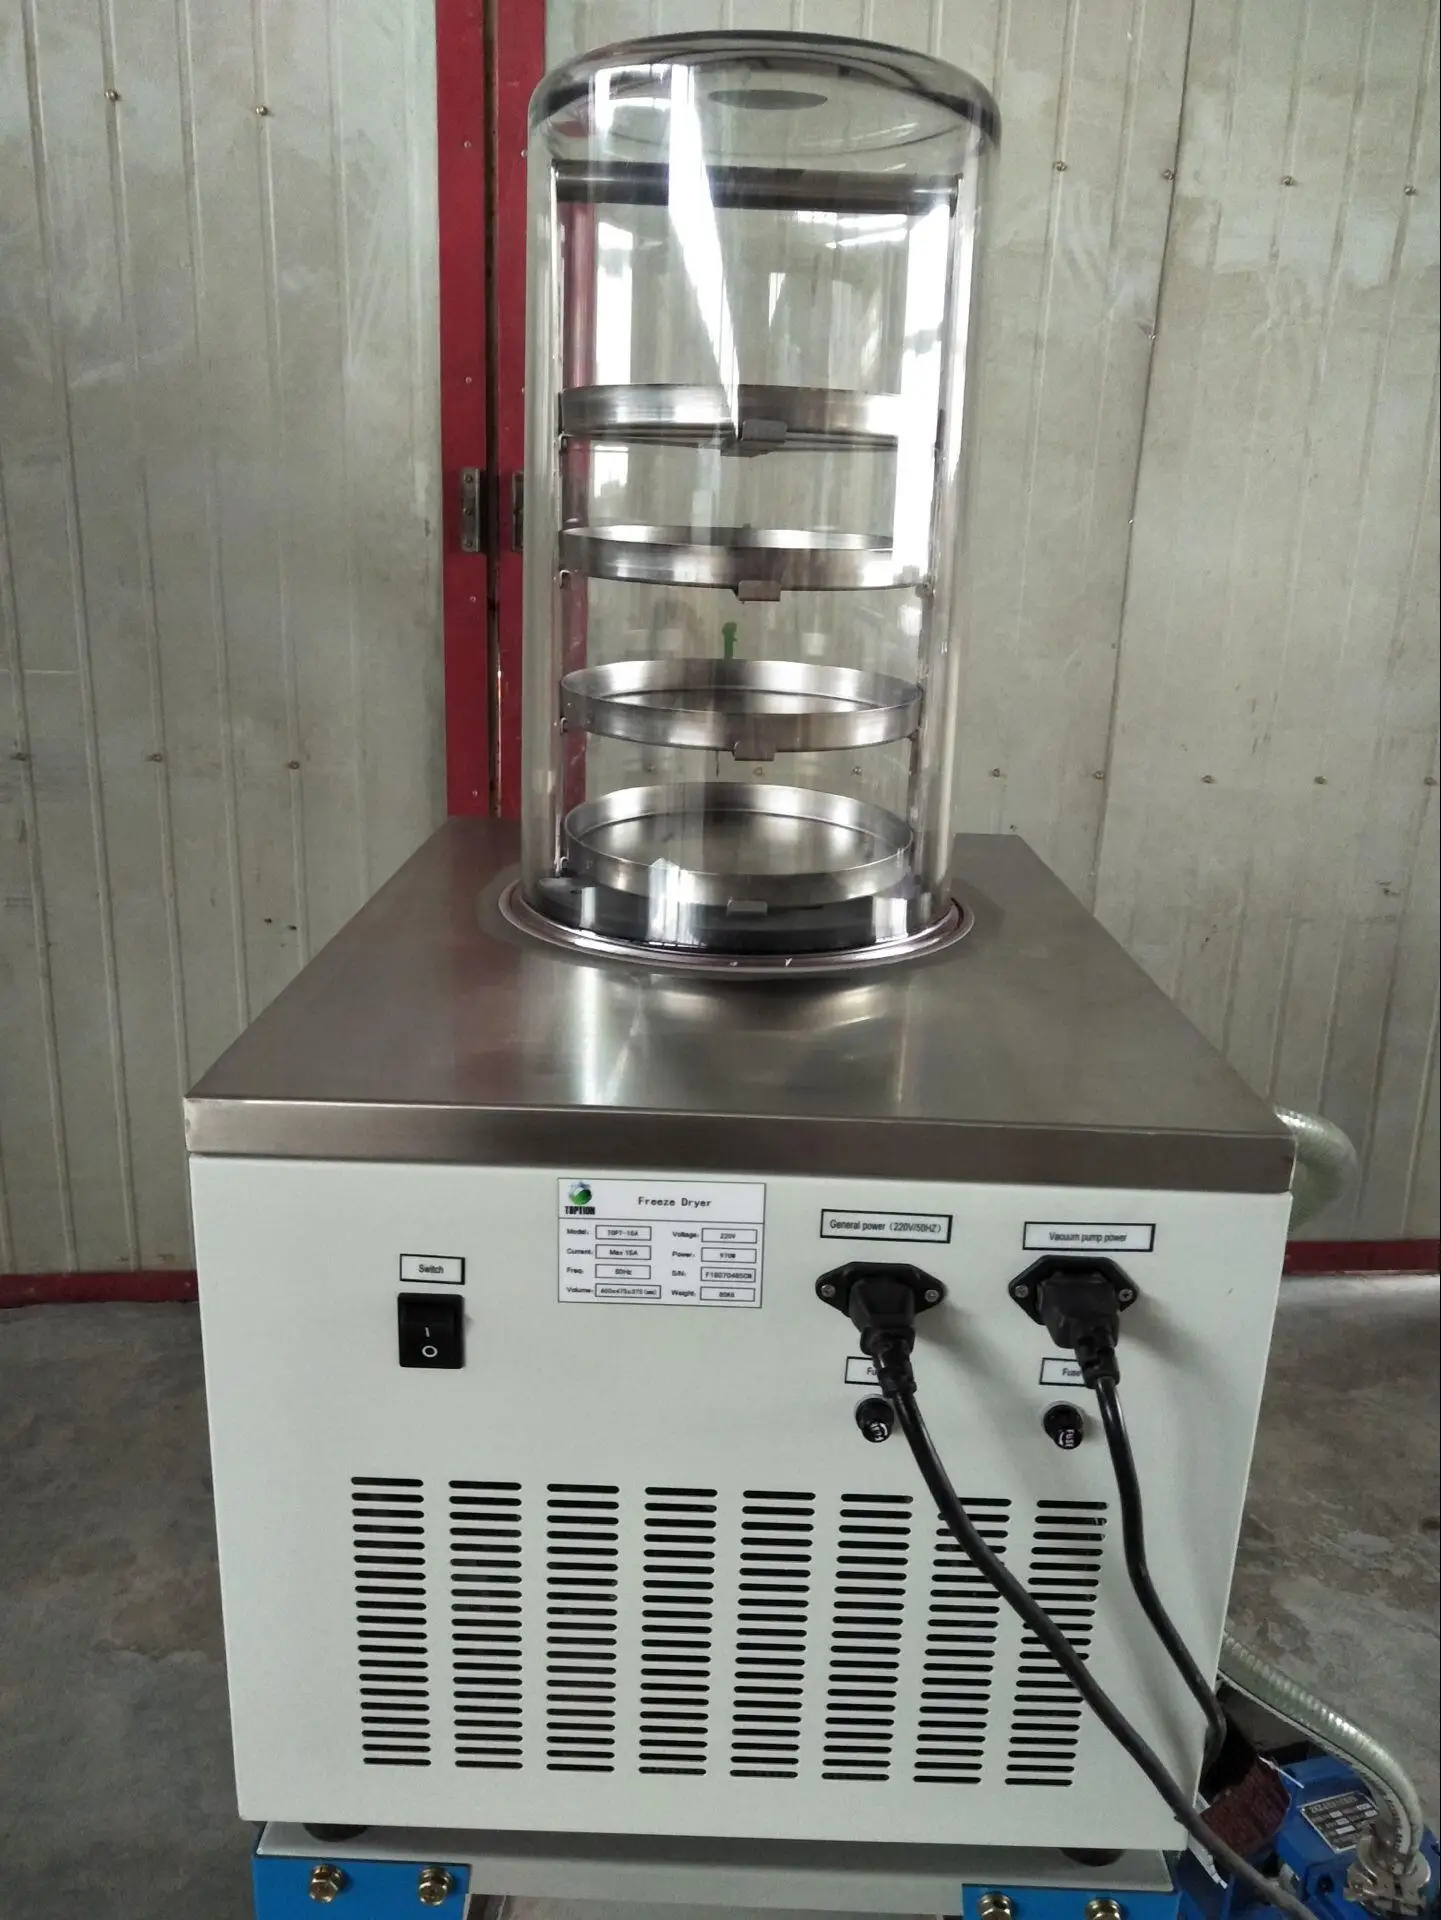 
Домашняя сушильная машина обычного типа 3 ~ 4 кг/24 ч домашняя вакуумная сушильная машина цена 